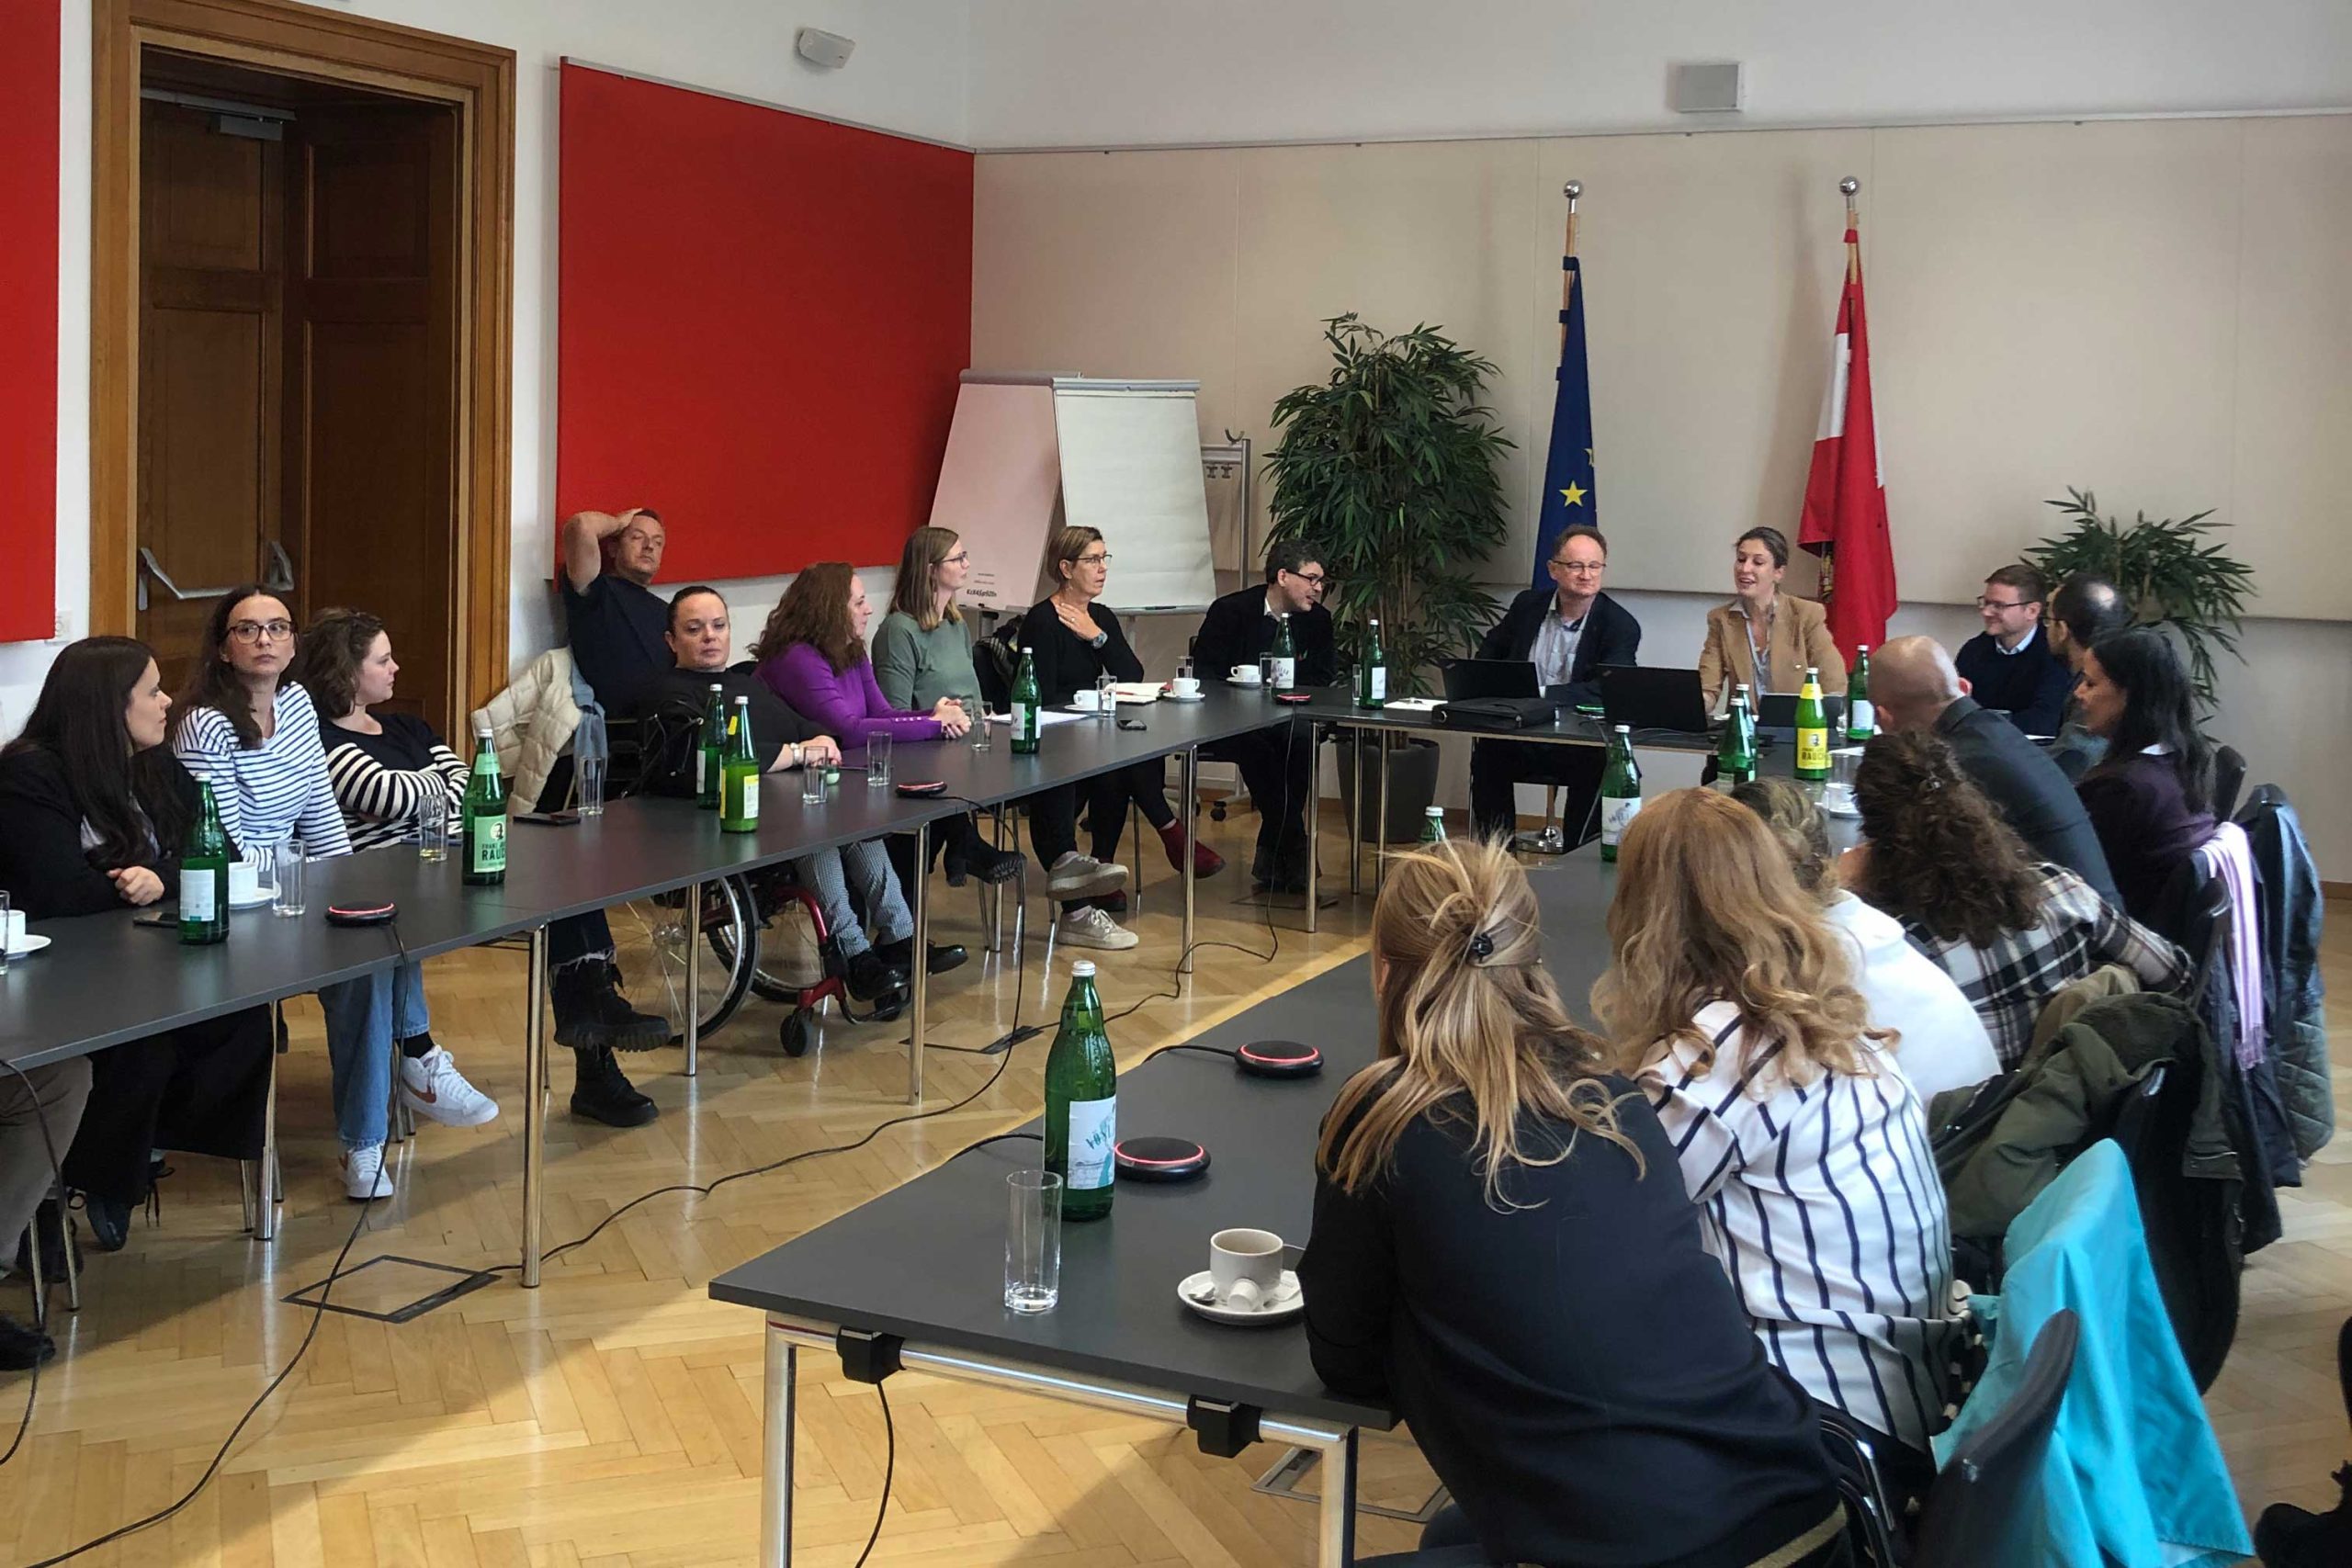 Svi učesnici sede zajedno za stolom. U pozadini je zastava Austrije i Evropske unije